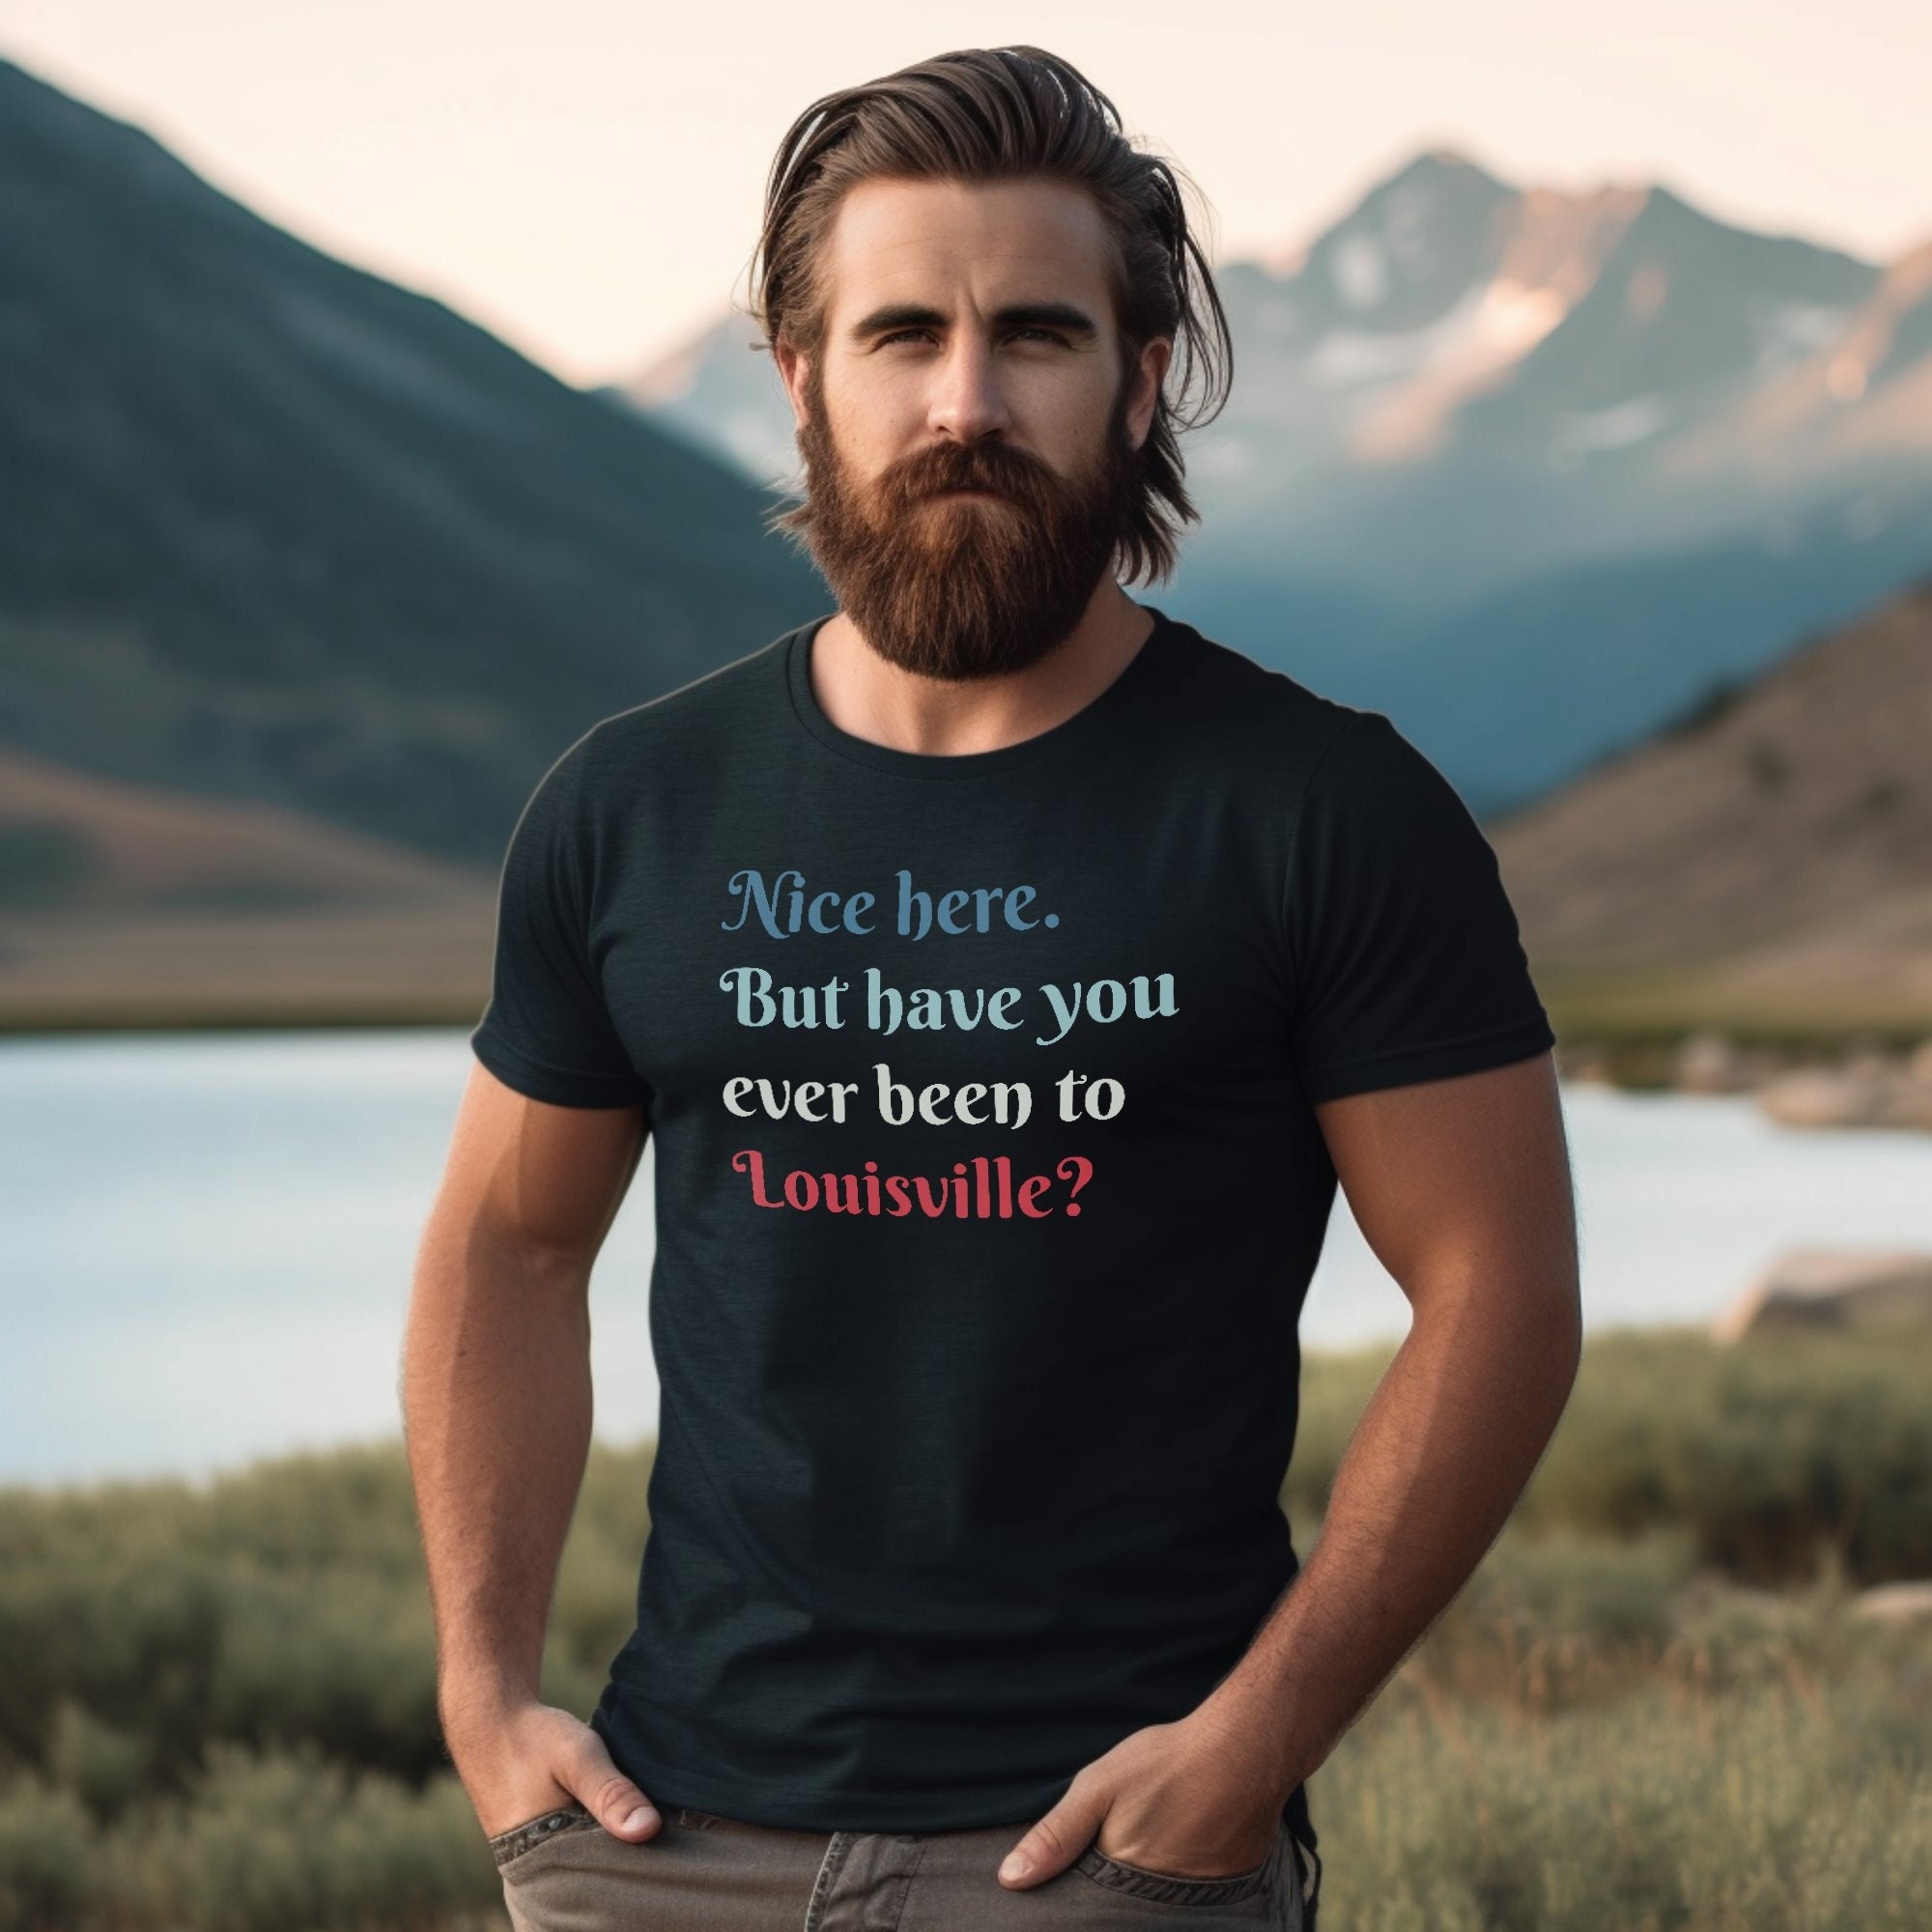 louisville tee shirt